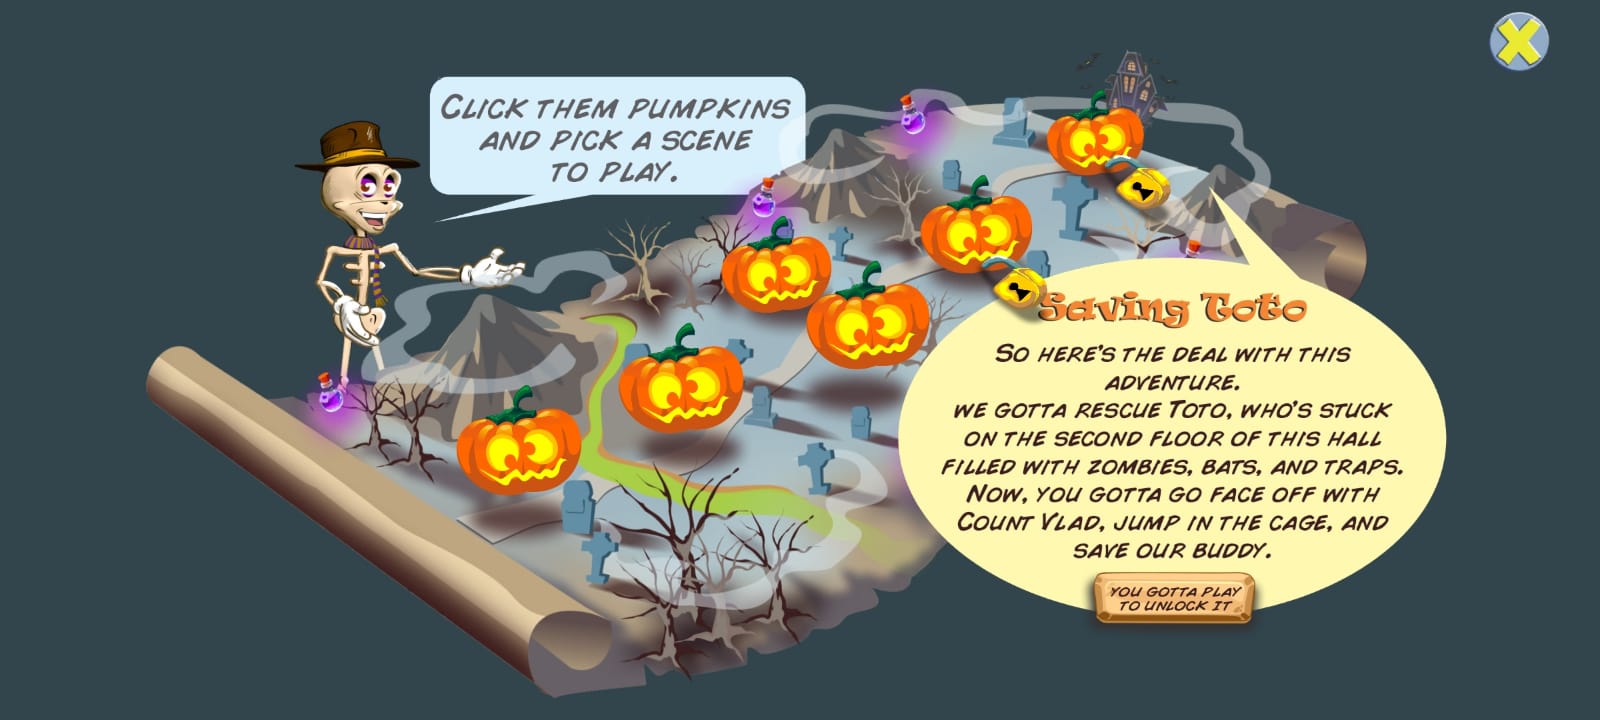 Download Pumpkins Quest für Android A.n.d.r.o.i.d. .5...0. .a.n.d. .m.o.r.e kostenlos.